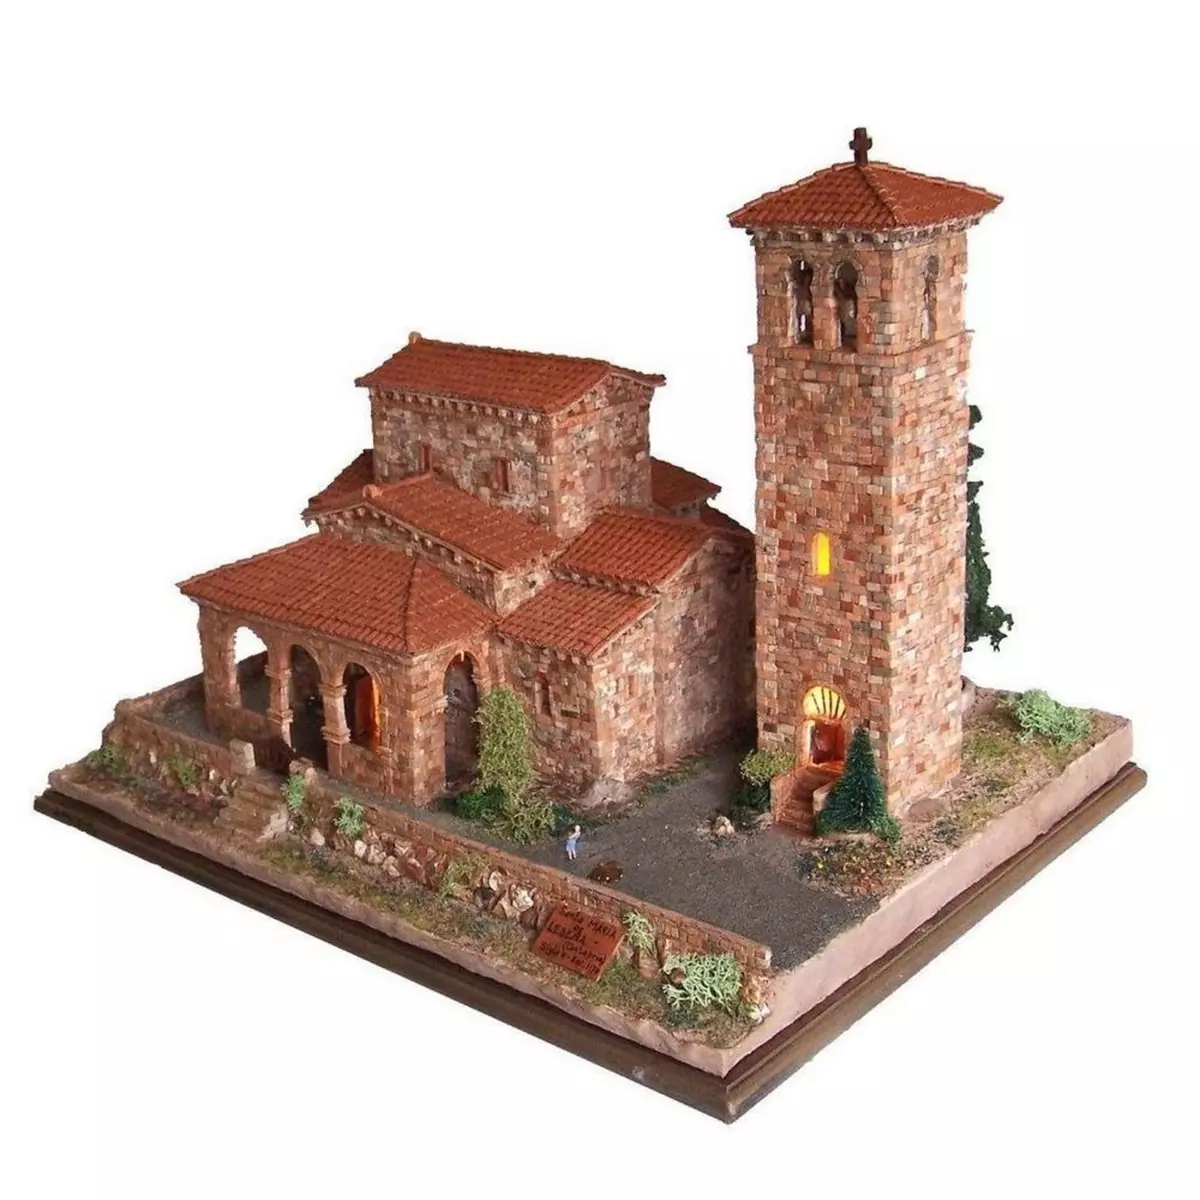  Maquette céramique : Église Santa Maria de Lebeña